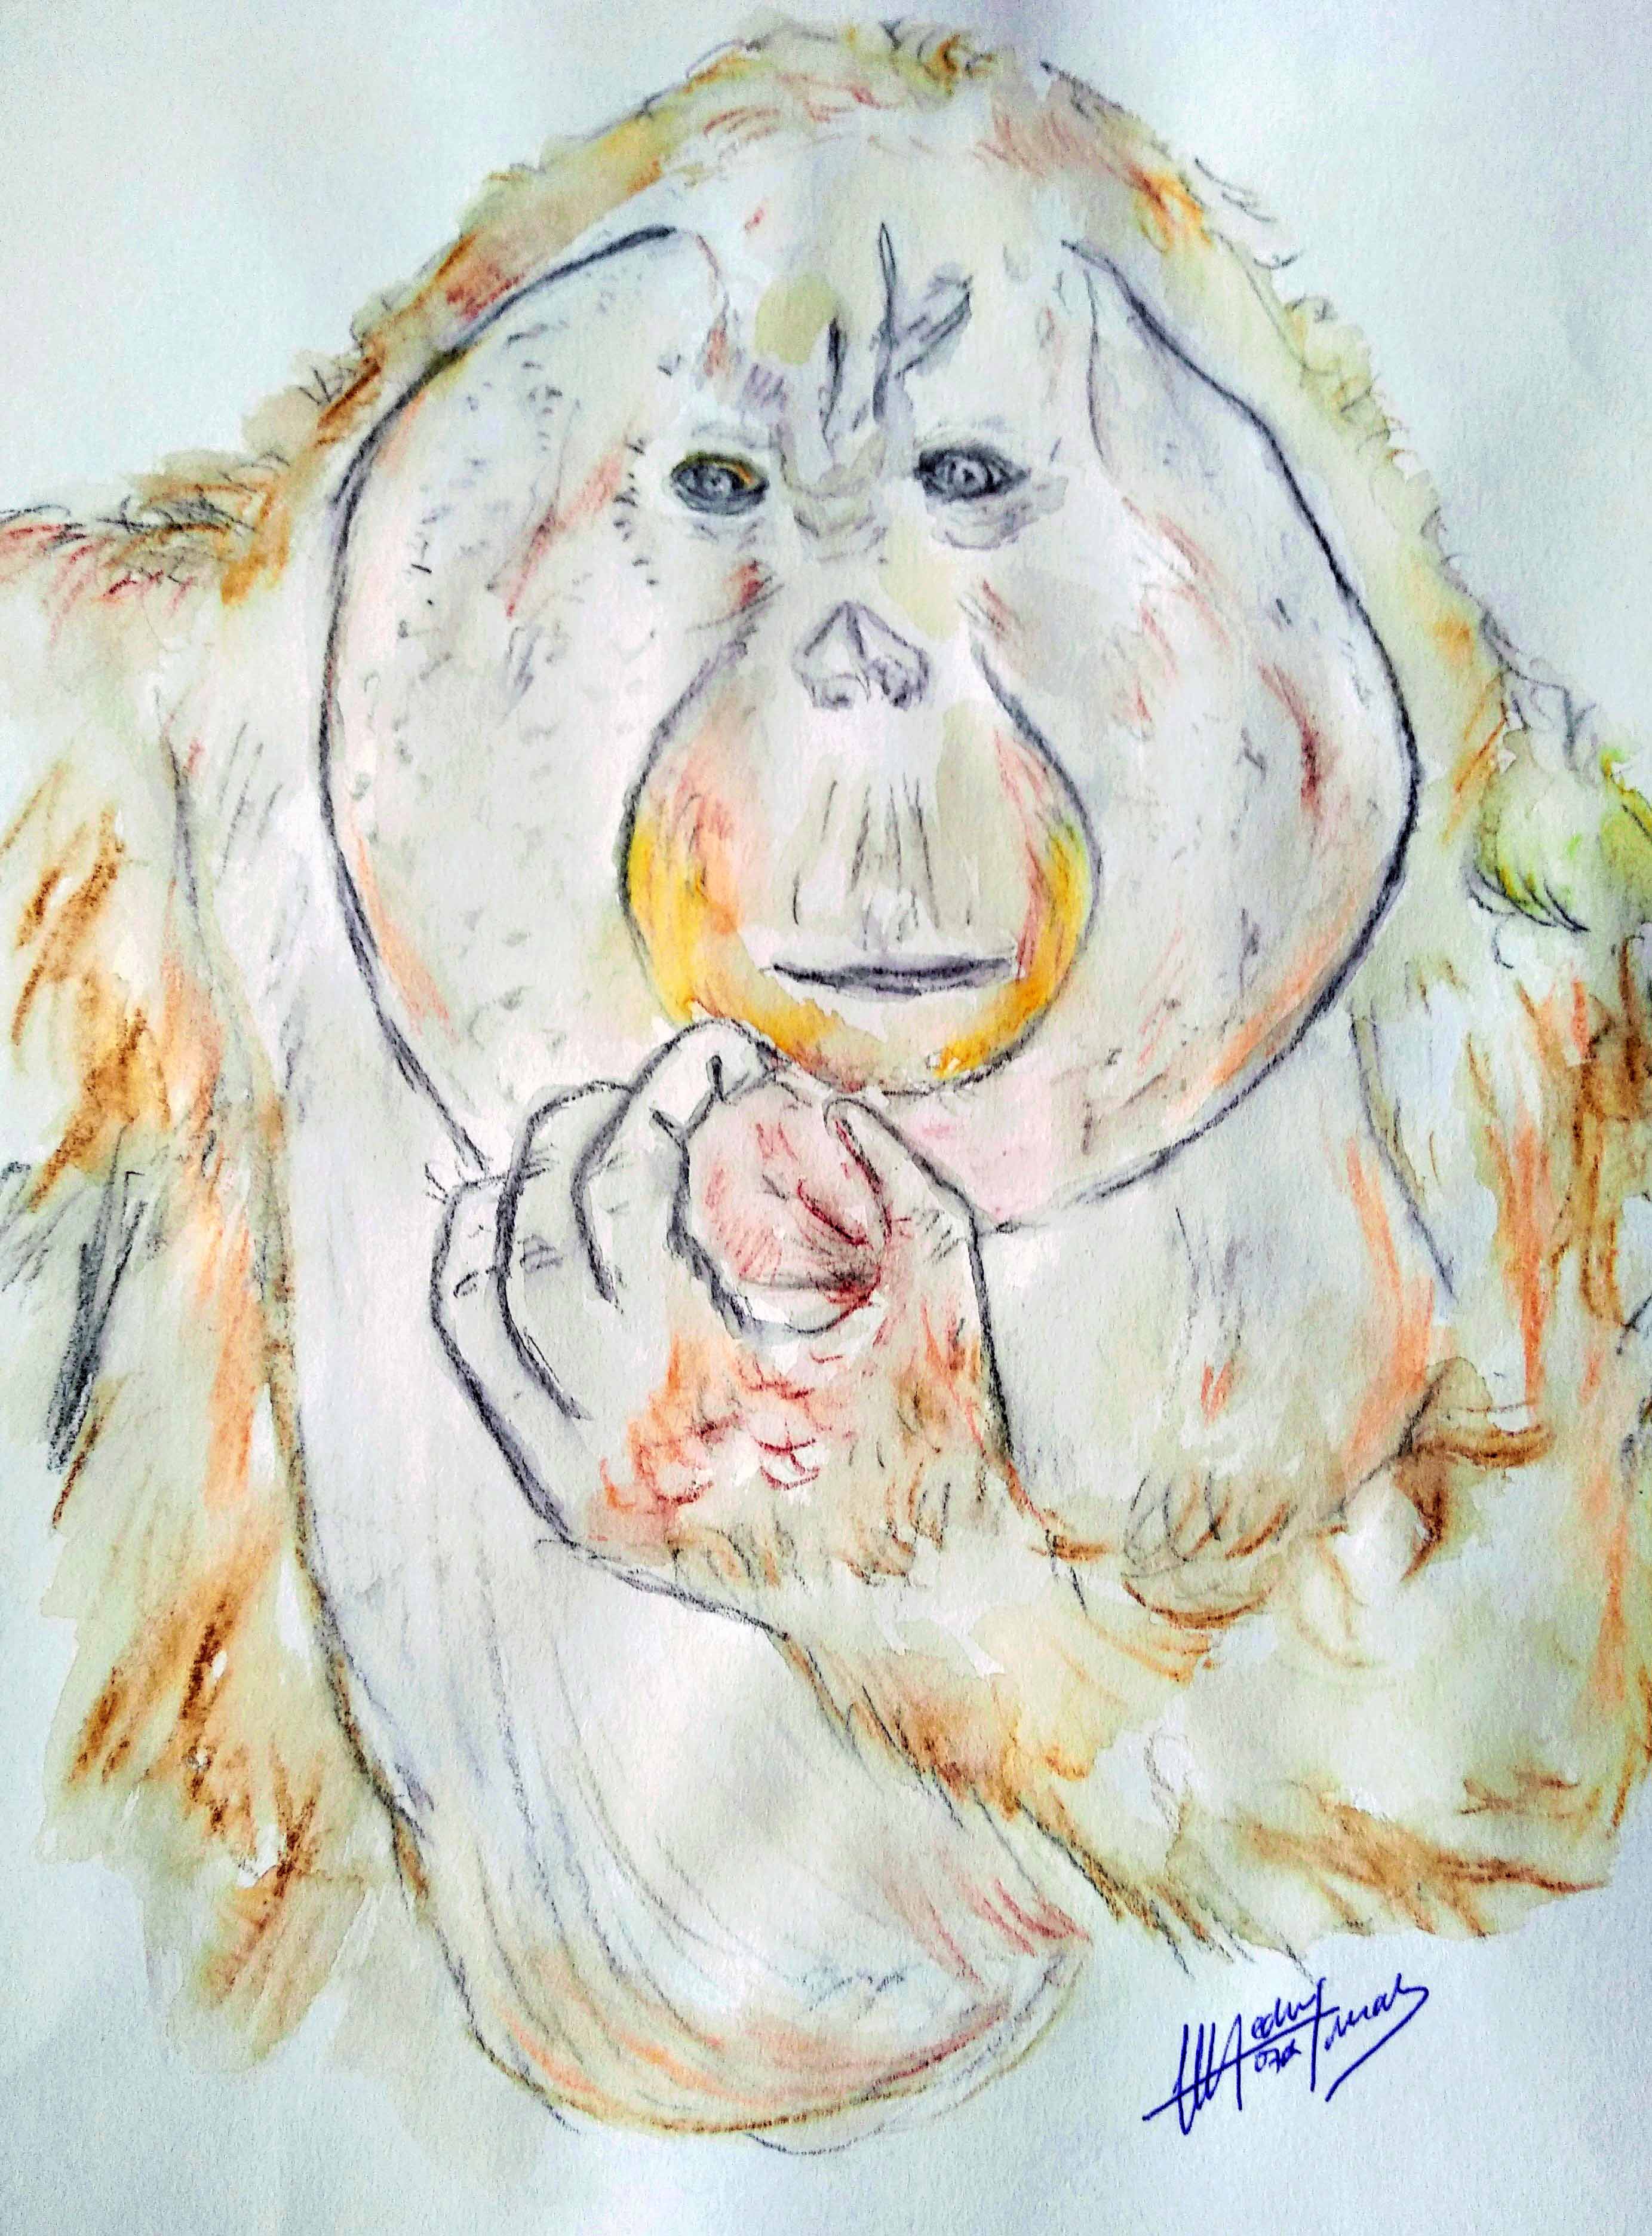 Proyecto Gran Simio lanza un concurso artístico y de literatura con el tema principal de los grandes simios y su protección.